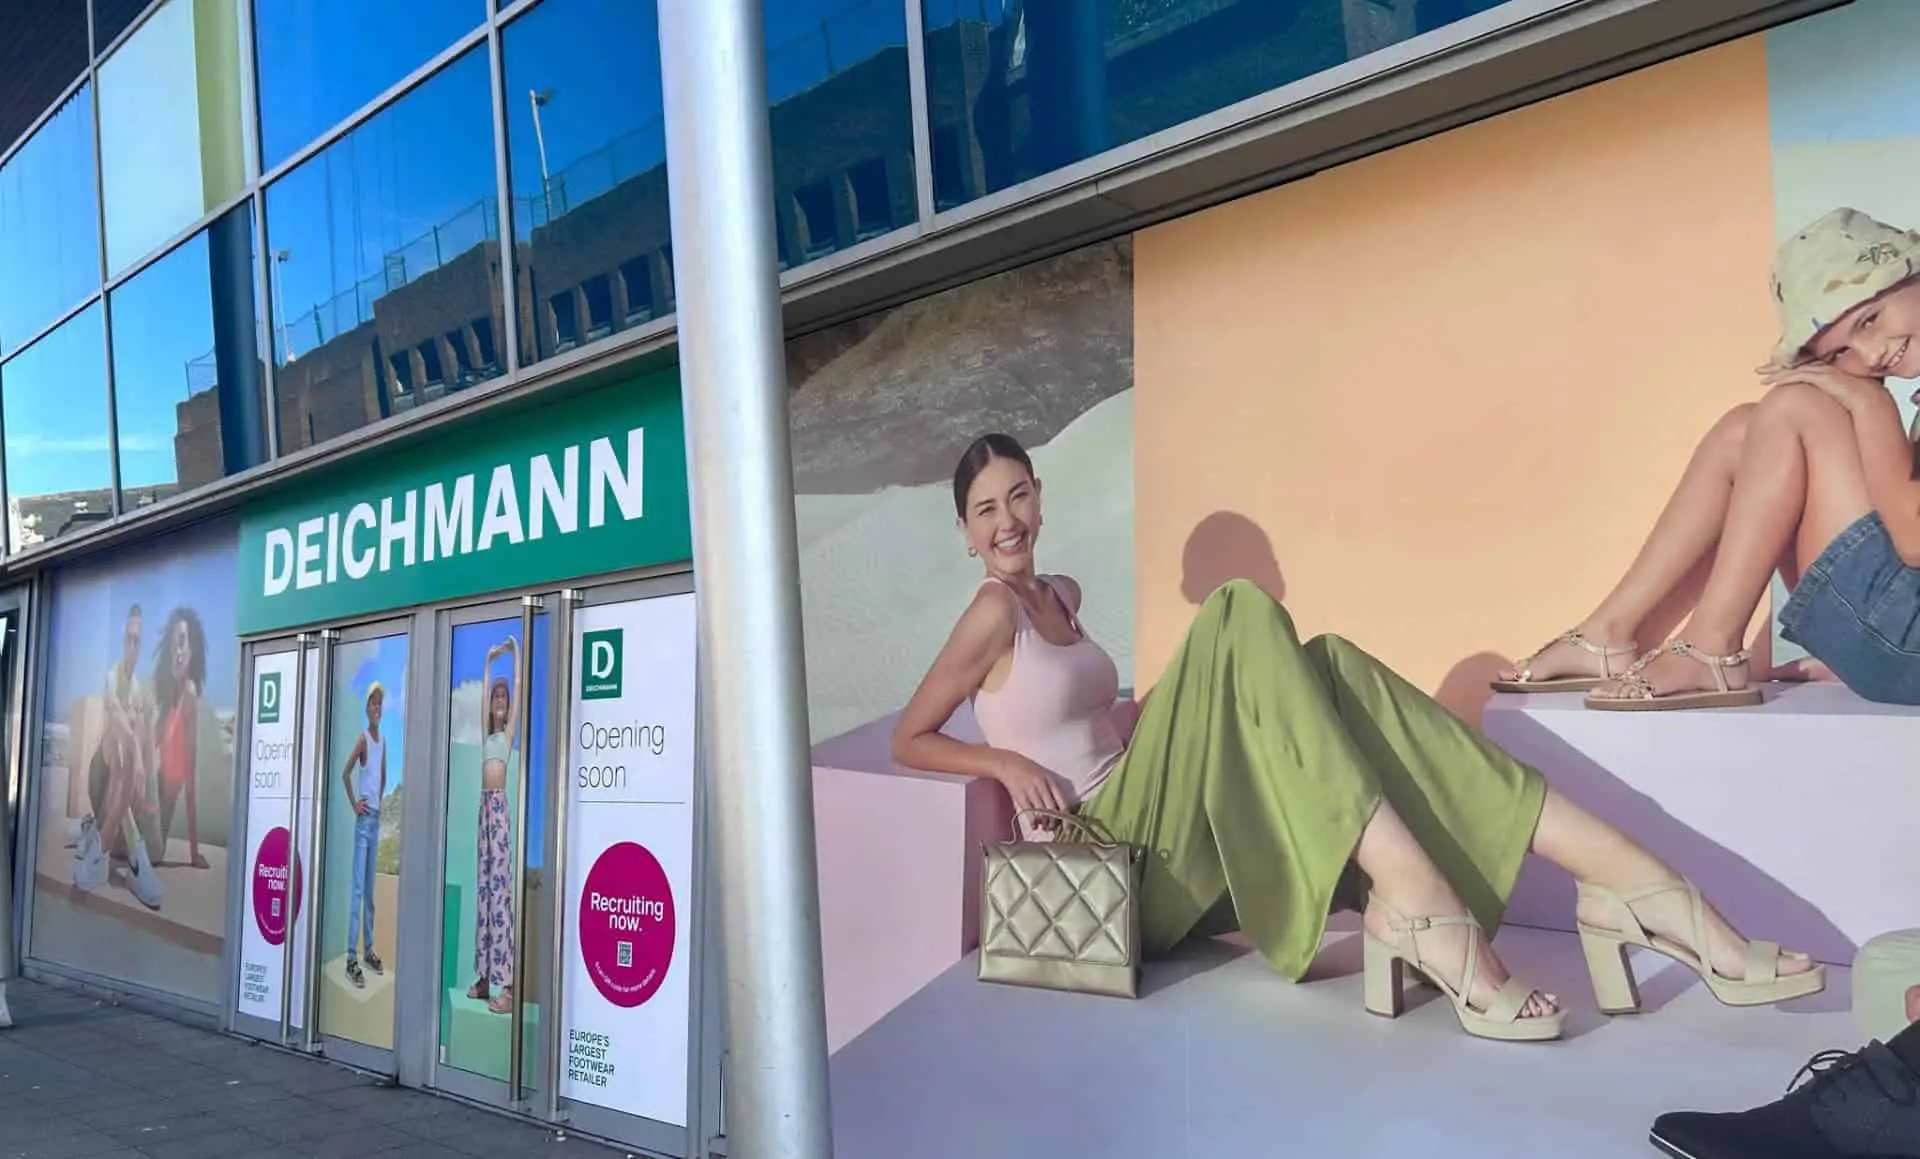 deichmann shoe shop opening soon2